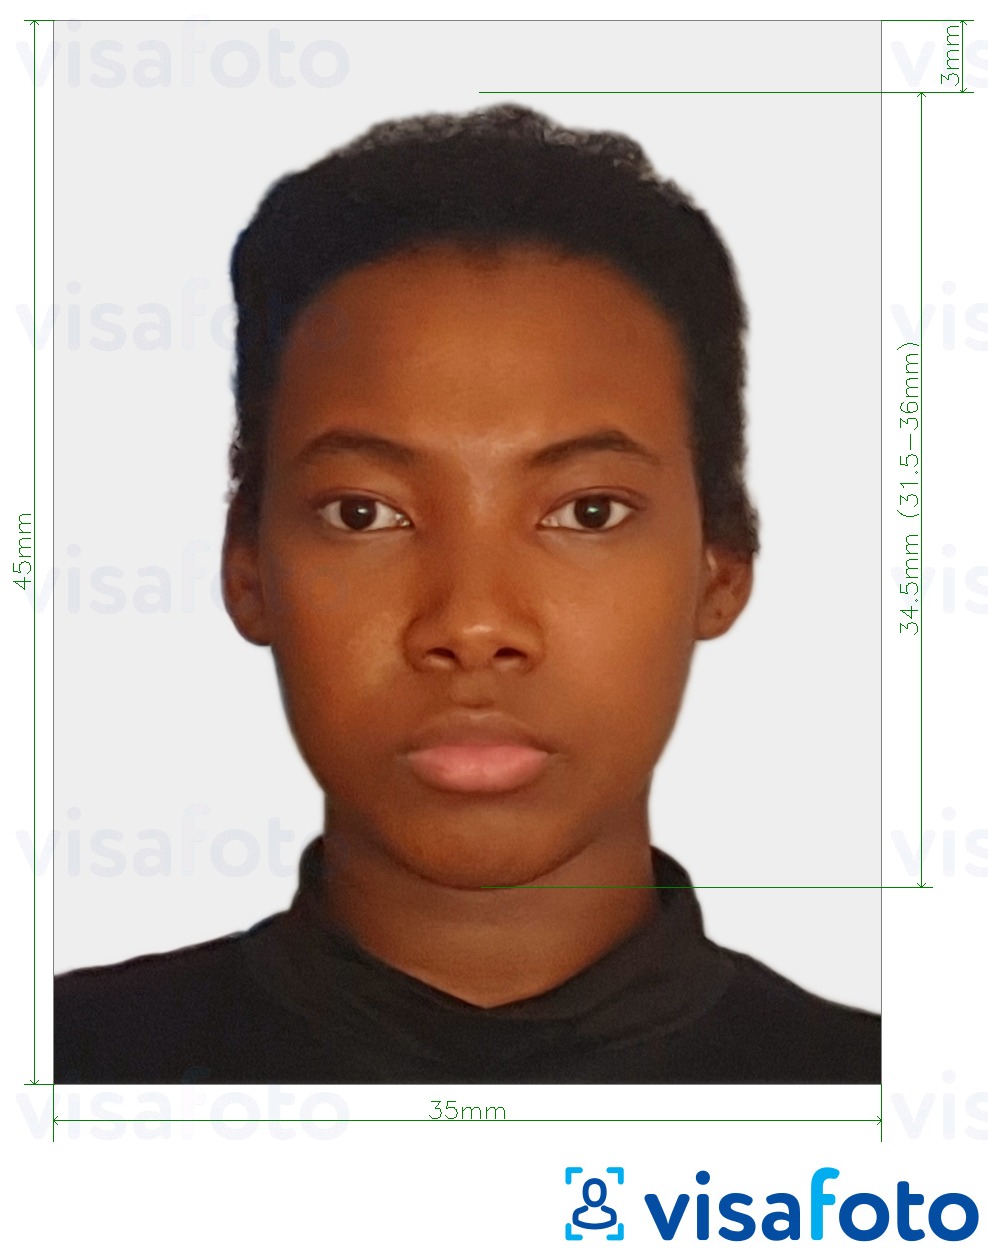 Exemple de foto per a Passaport de Togo 4,5x3,5 cm (45x35mm) amb la mida exacta especificada